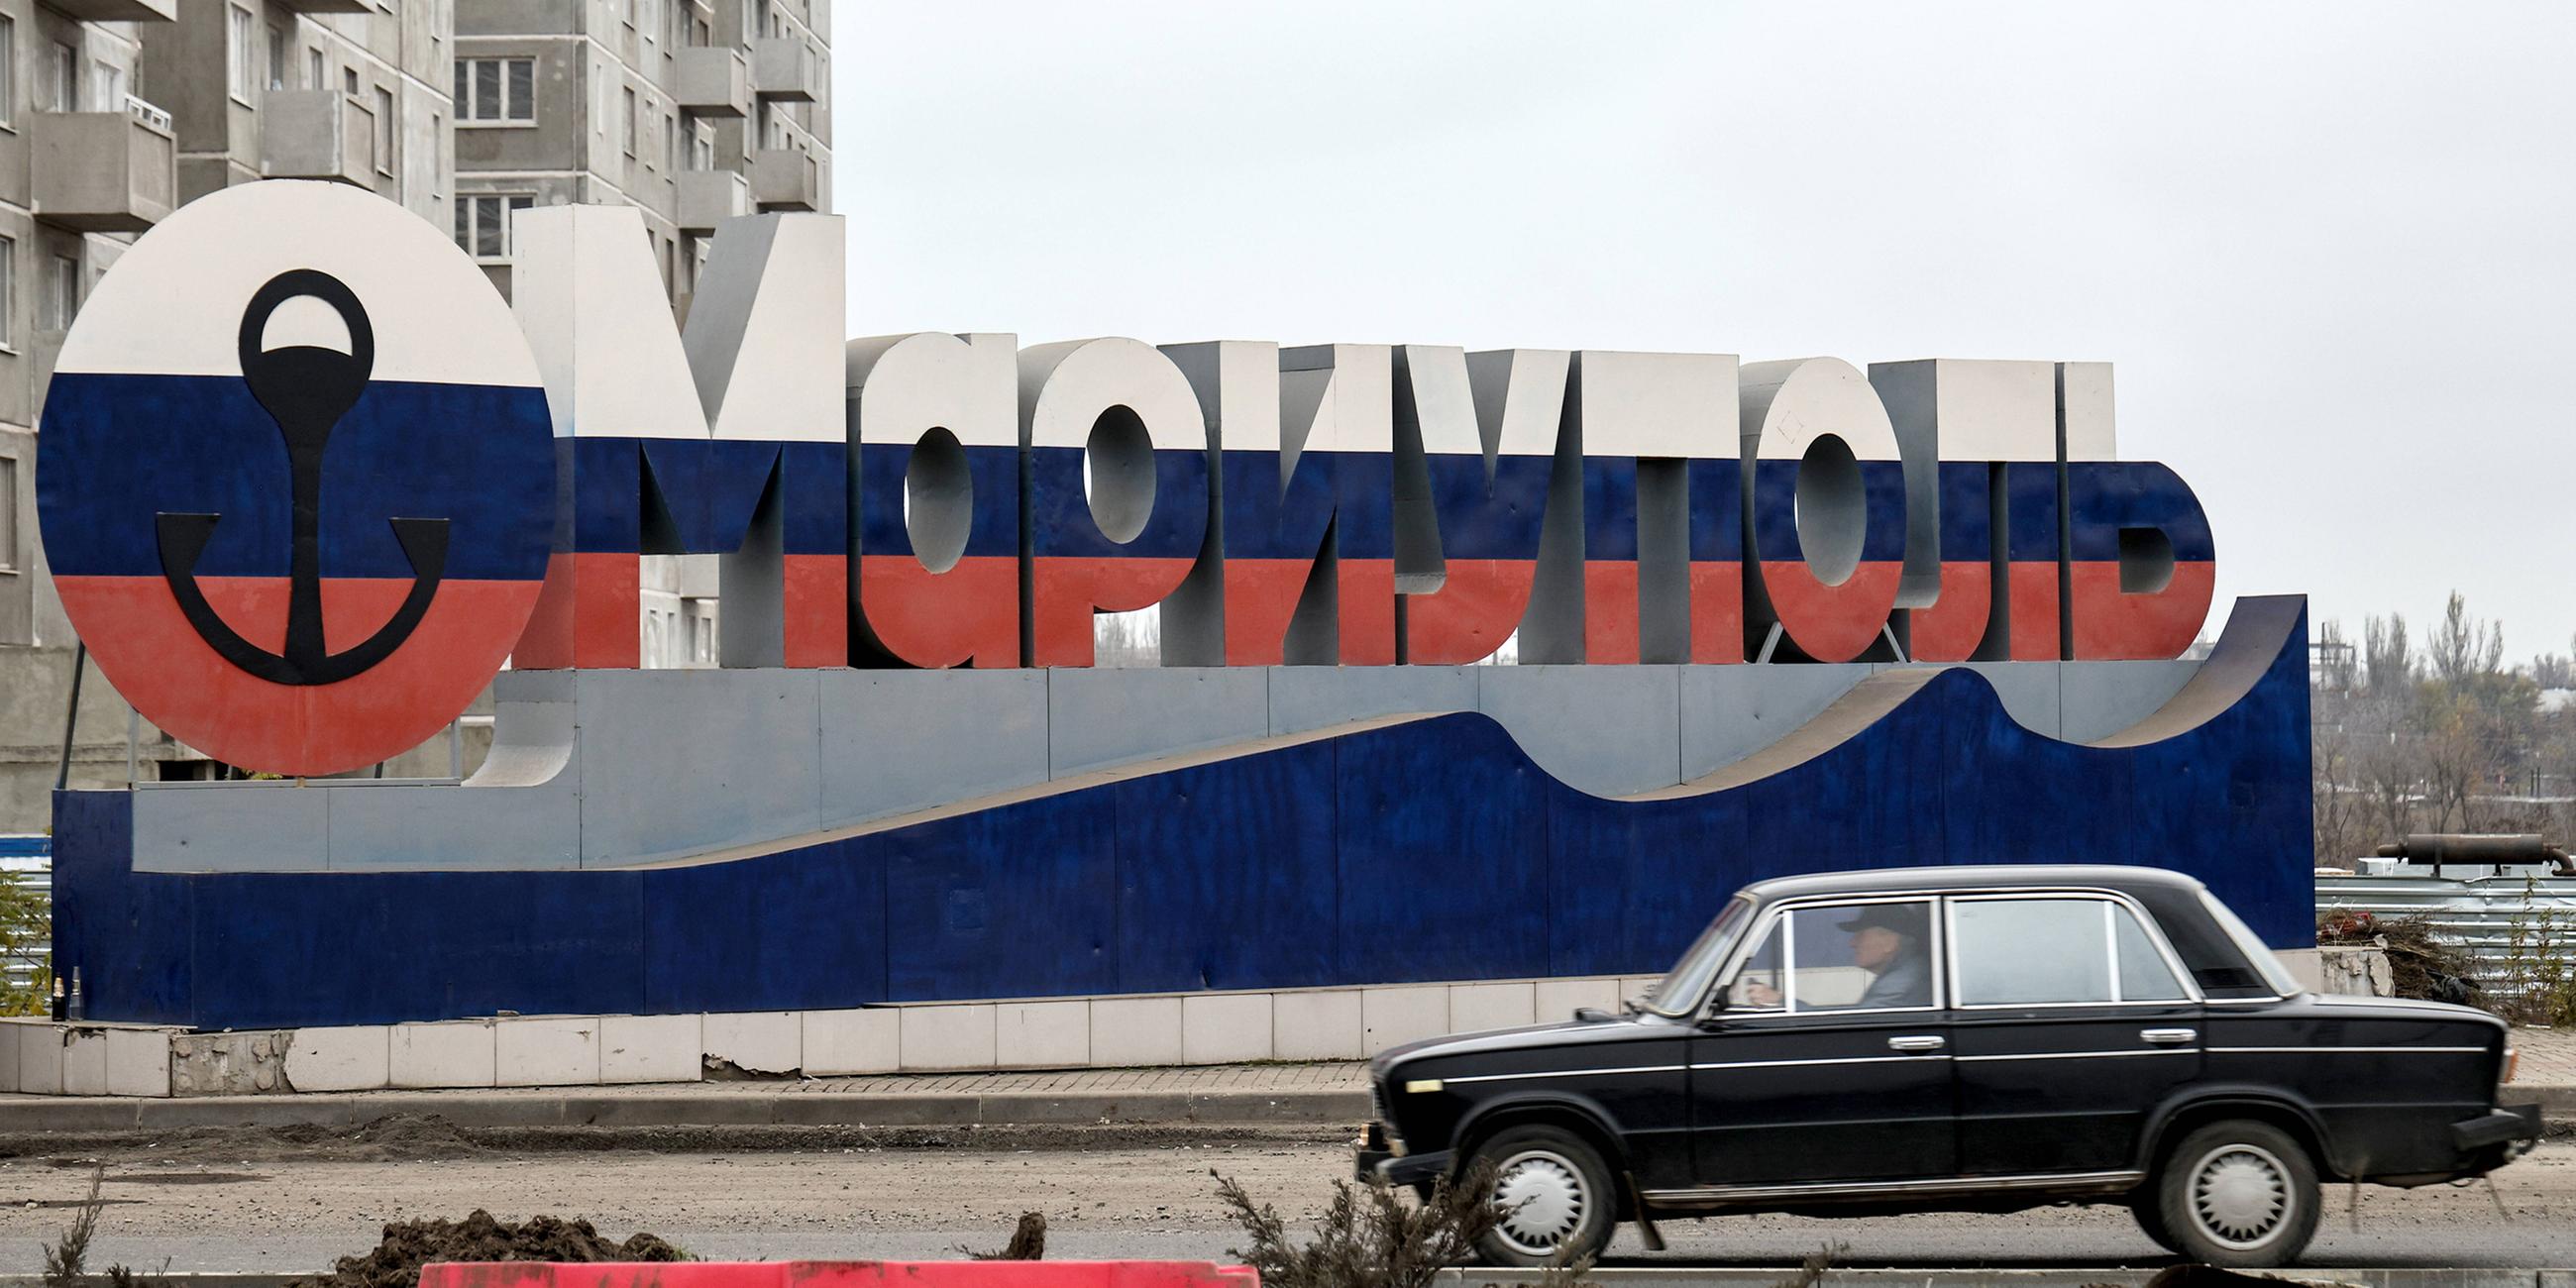 Archiv: Auto steht vor einem Willkommensschild in den Farben der russischen Flagge in Mariupol. (11.11.2022)